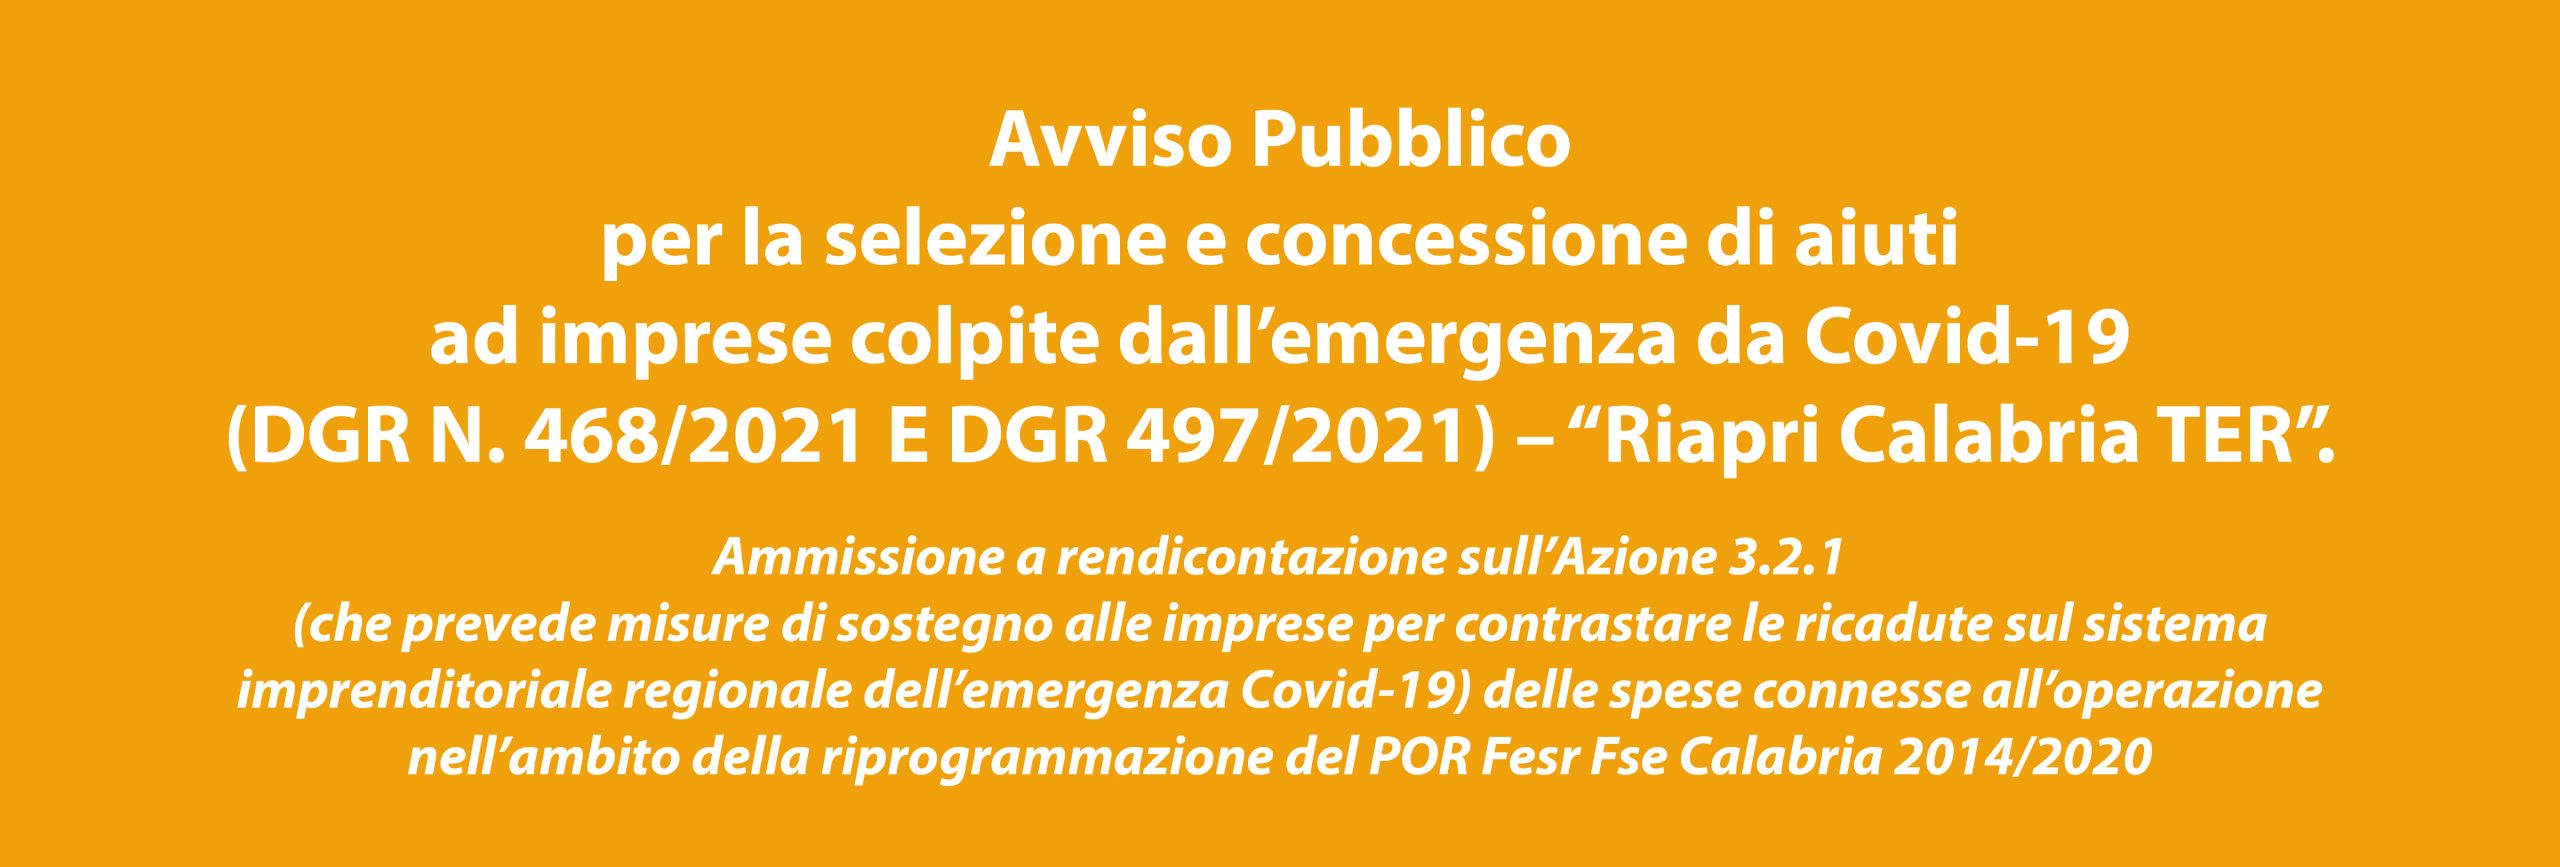 Avviso Pubblico per la selezione e concessione di aiuti ad imprese colpite dall’emergenza da Covid-19 (DGR N. 468/2021 E DGR 497/2021) – “Riapri Calabria TER”.